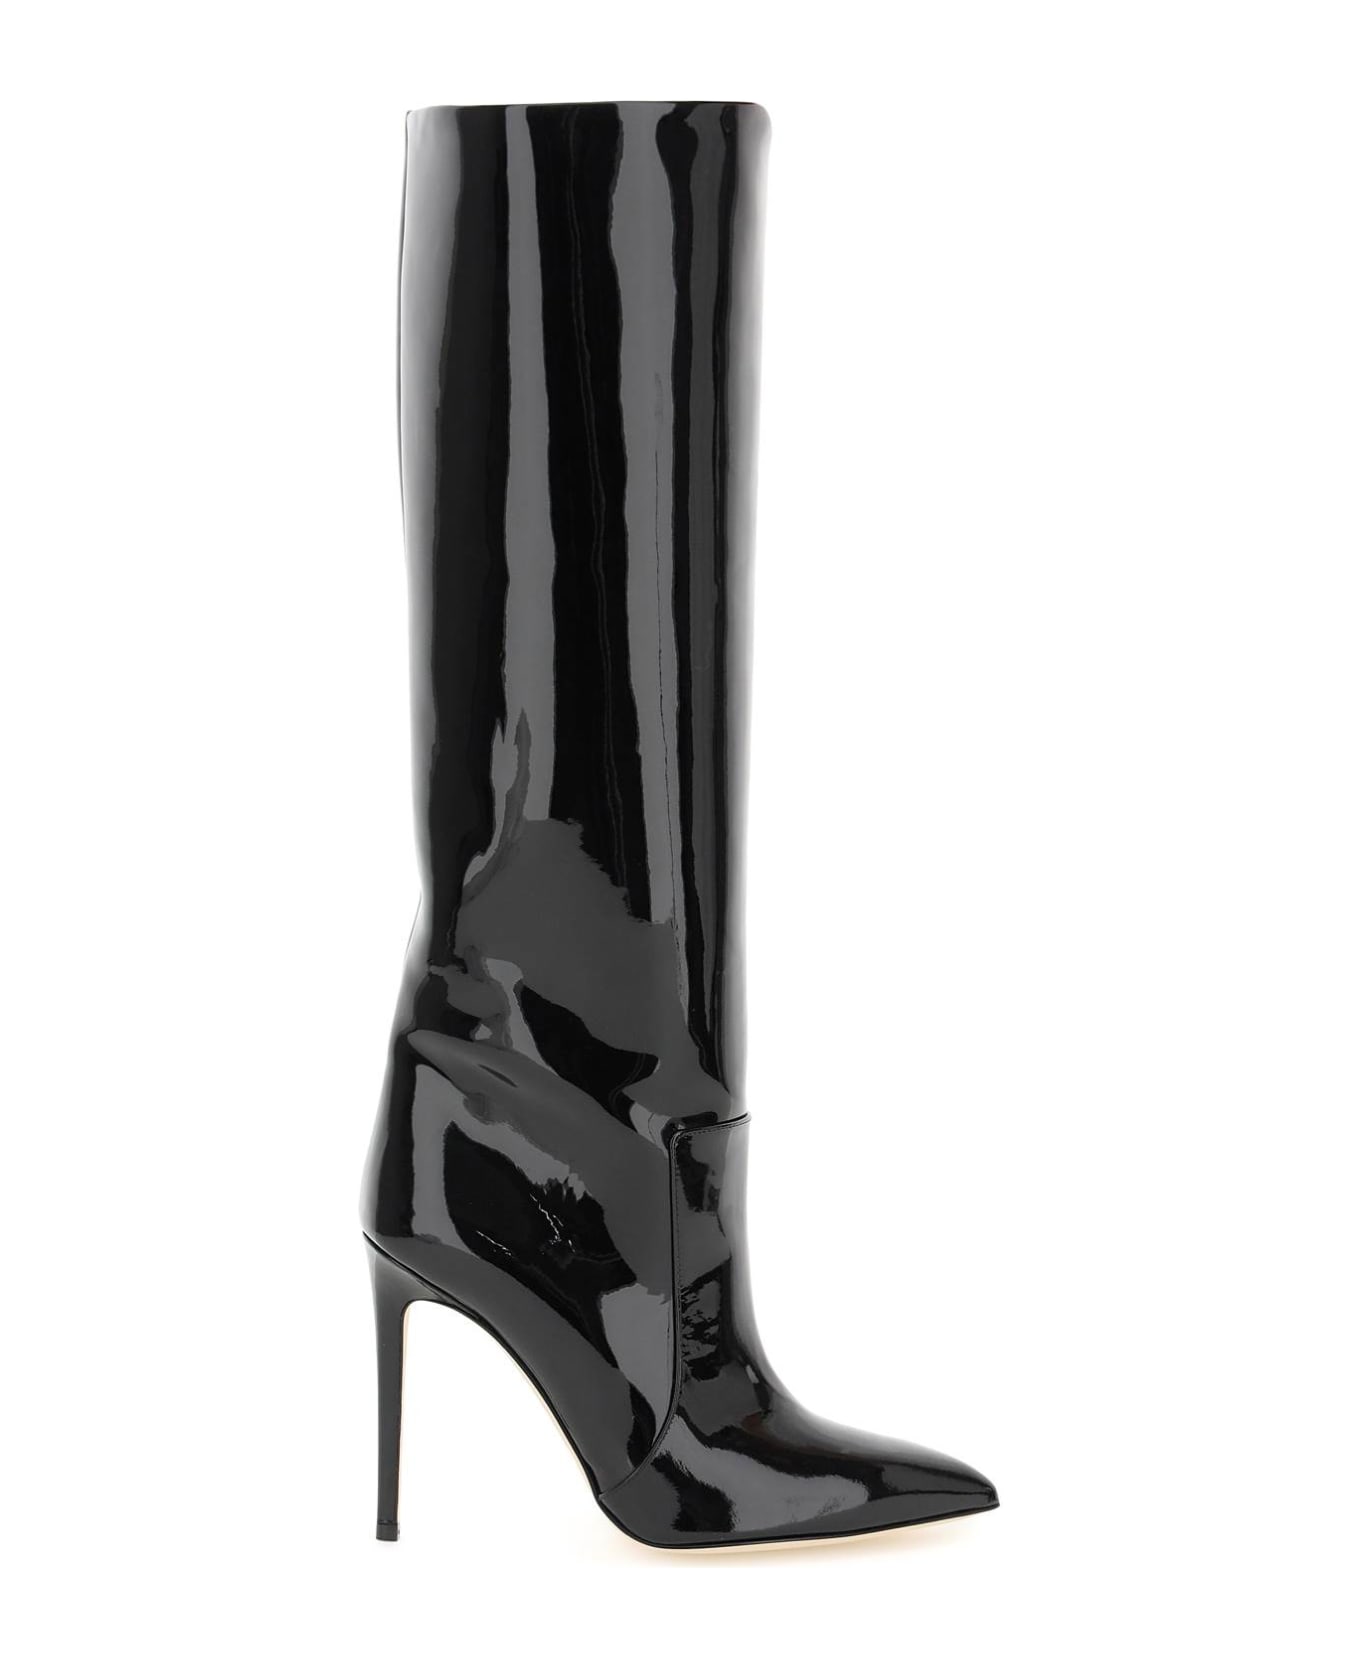 Paris Texas Patent Leather Stiletto Boots - Black